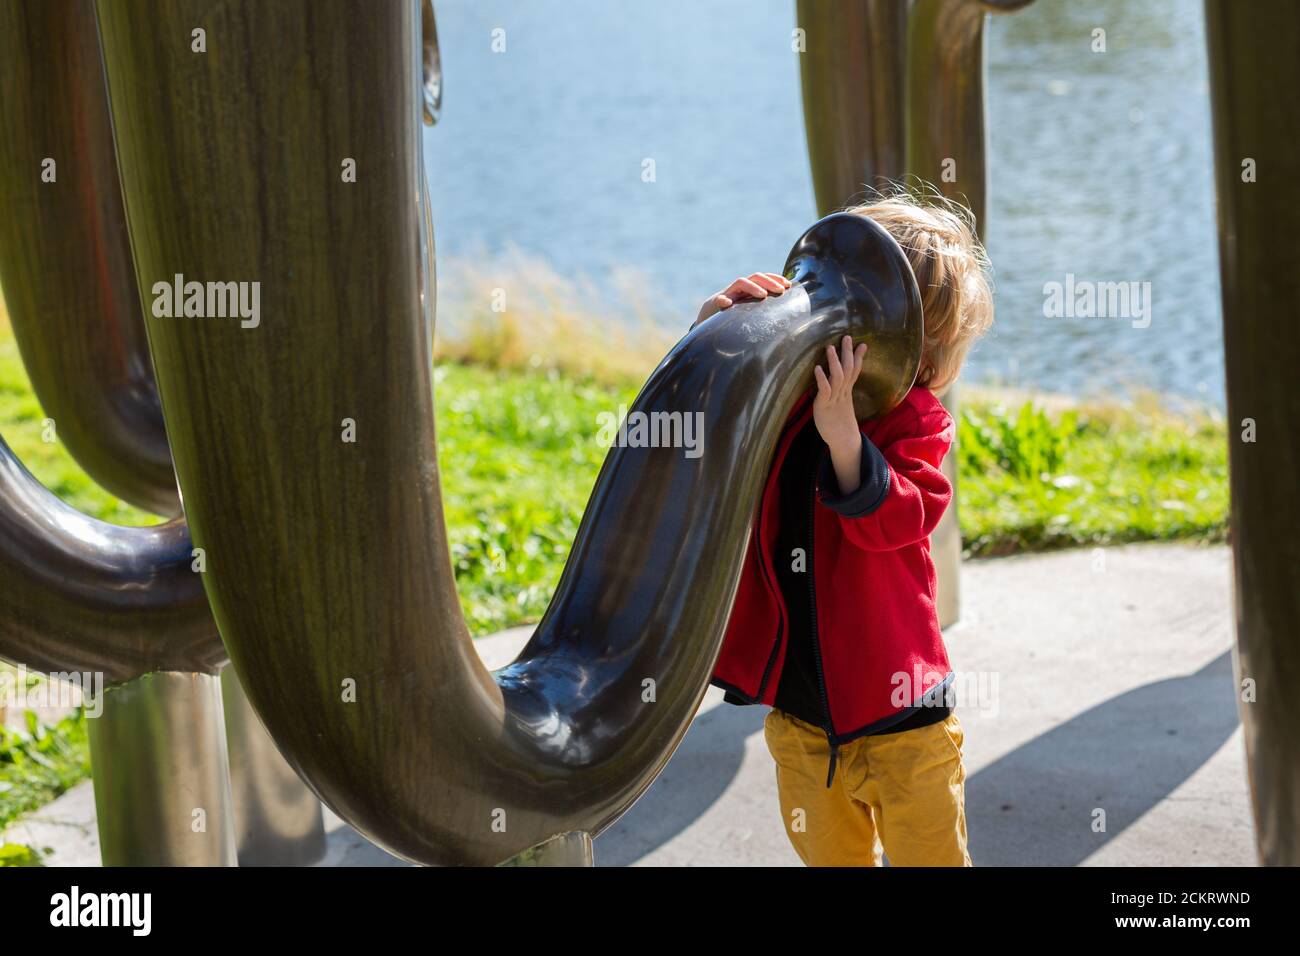 jeune garçon regardant dans une grande sculpture ressemblant au tuba instruments à vent Banque D'Images